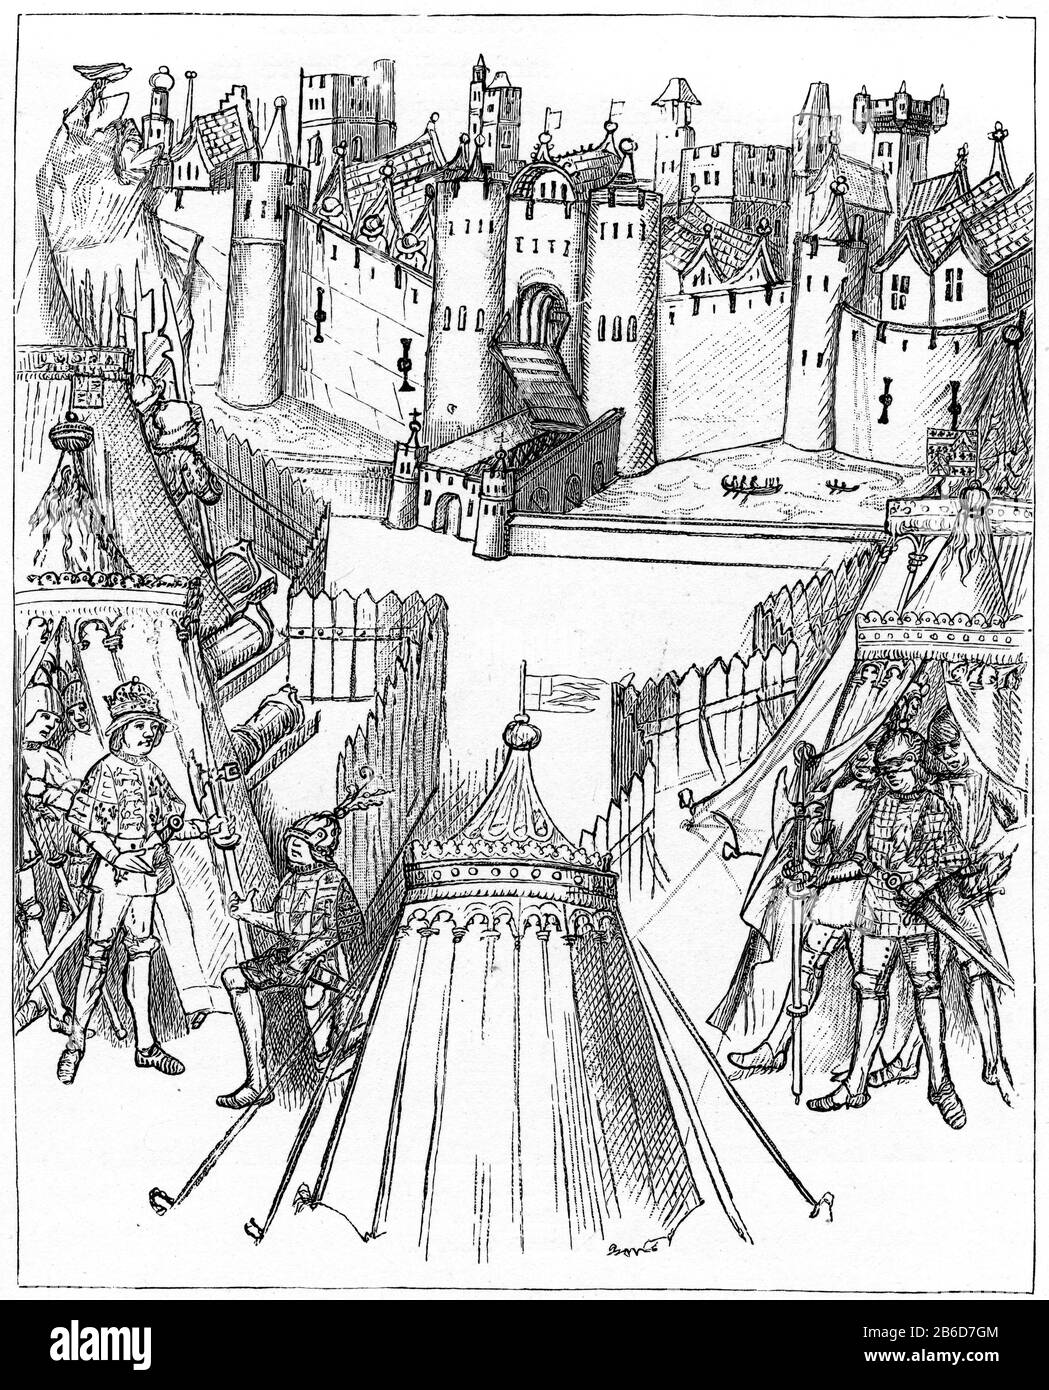 Belagerung von Rouen, 1418. Richard Beauchamp, Earl of Warwick (1382-1439), mit Heinrich V. (1386-1422) bei der Belagerung von Rouen, 1418. Die Belagerung von Rouen (29. Juli 1418 - 19. Januar 1419) war ein wichtiges Ereignis im Hundertjährigen Krieg, wo englische Truppen loyal zu Heinrich V. Rouen, die Hauptstadt der Normandie, von den normannischen Franzosen erobert haben. Von den Beauchamp-Festumzug c1485. Stockfoto